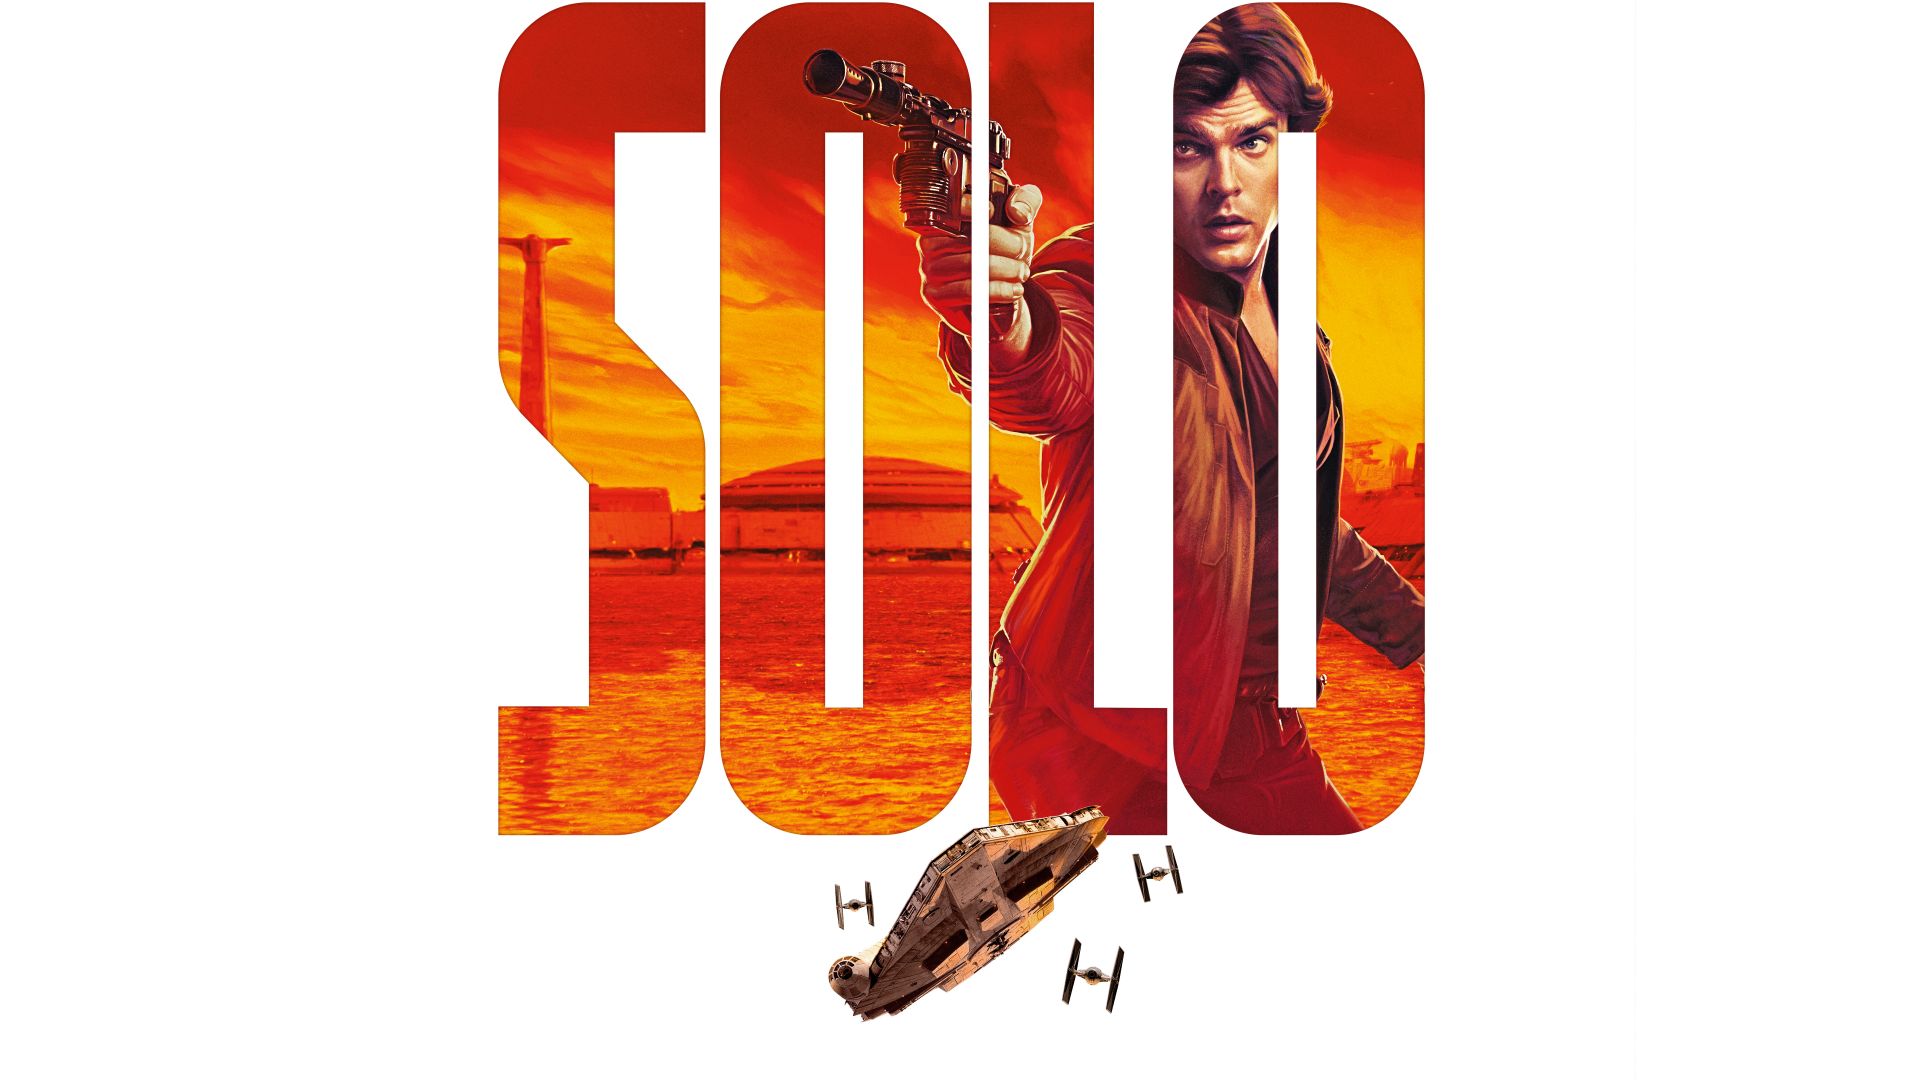 Хан Соло: Звездные войны. Истории, Solo: A Star Wars Story, Alden Ehrenreich, 8k (horizontal)